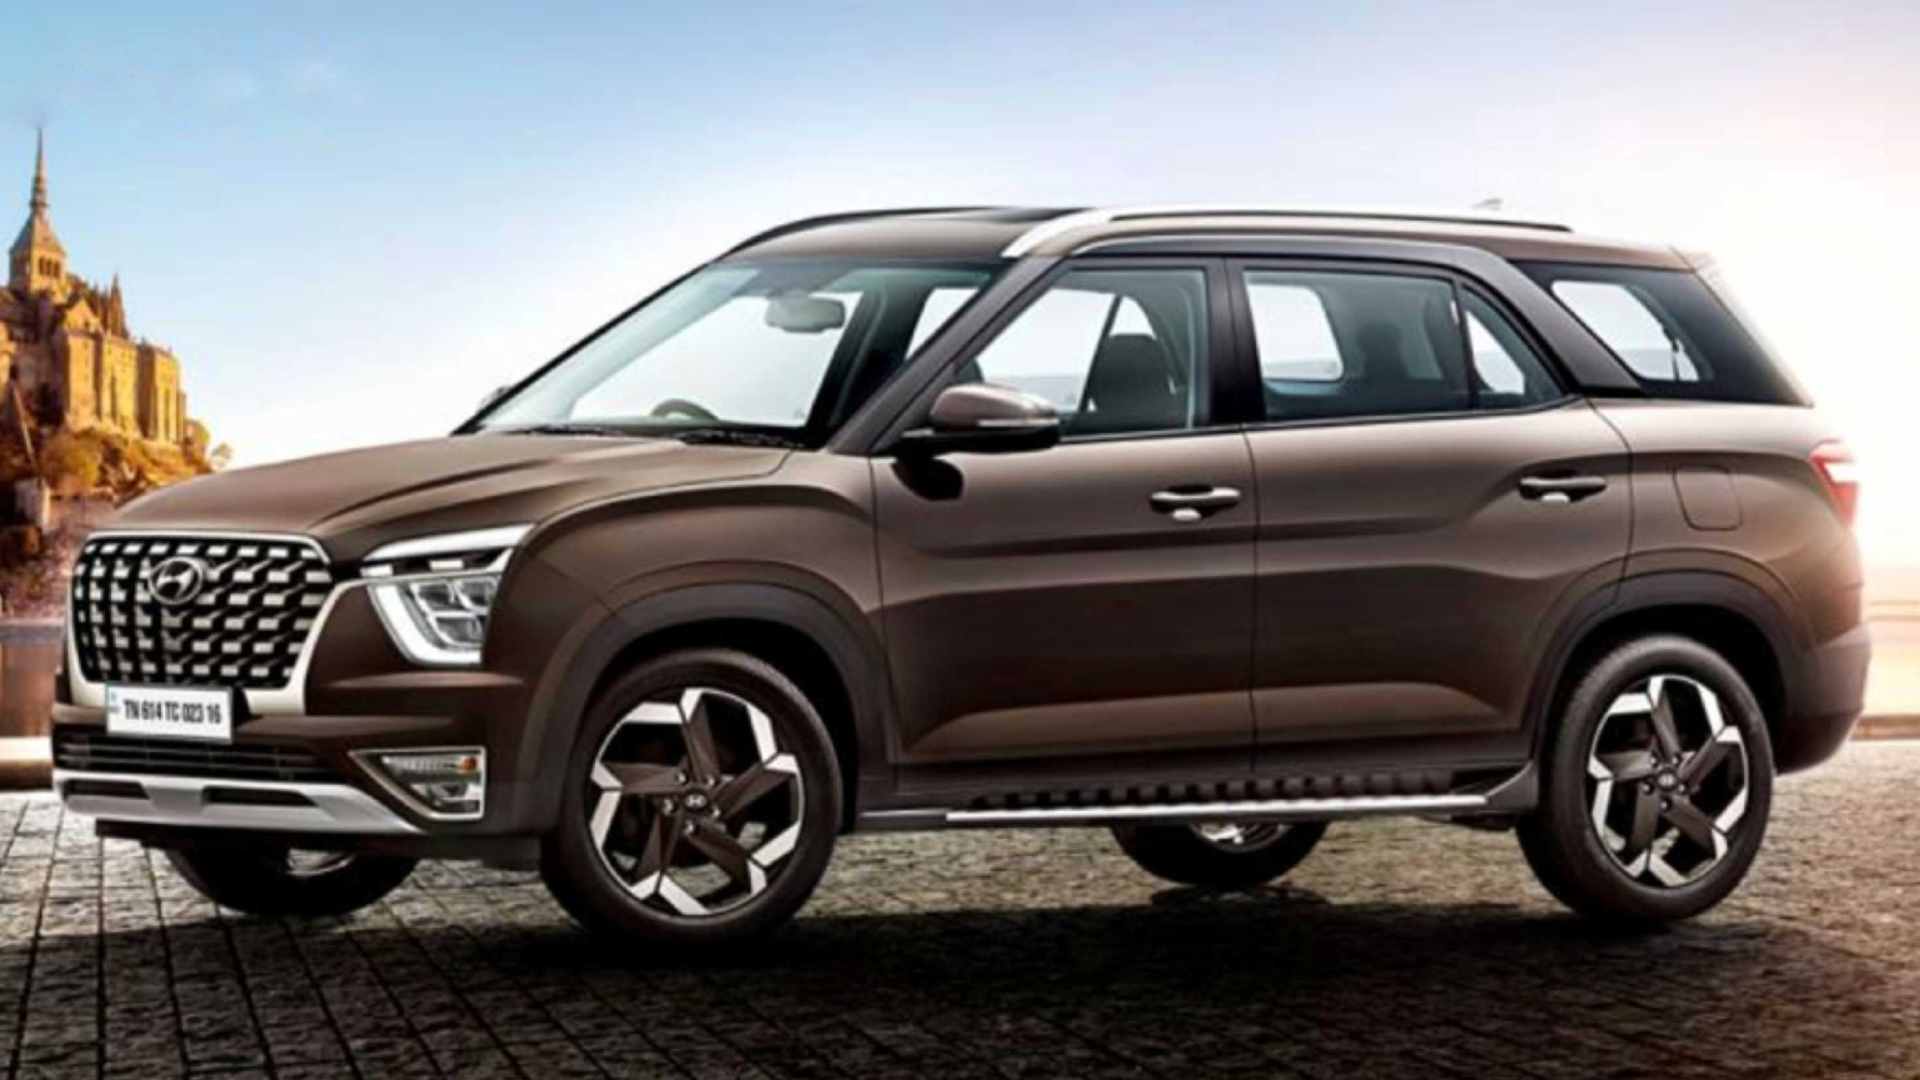  New Hyundai Alcazar images reveal key design details, to get 2.0-litre petrol engine